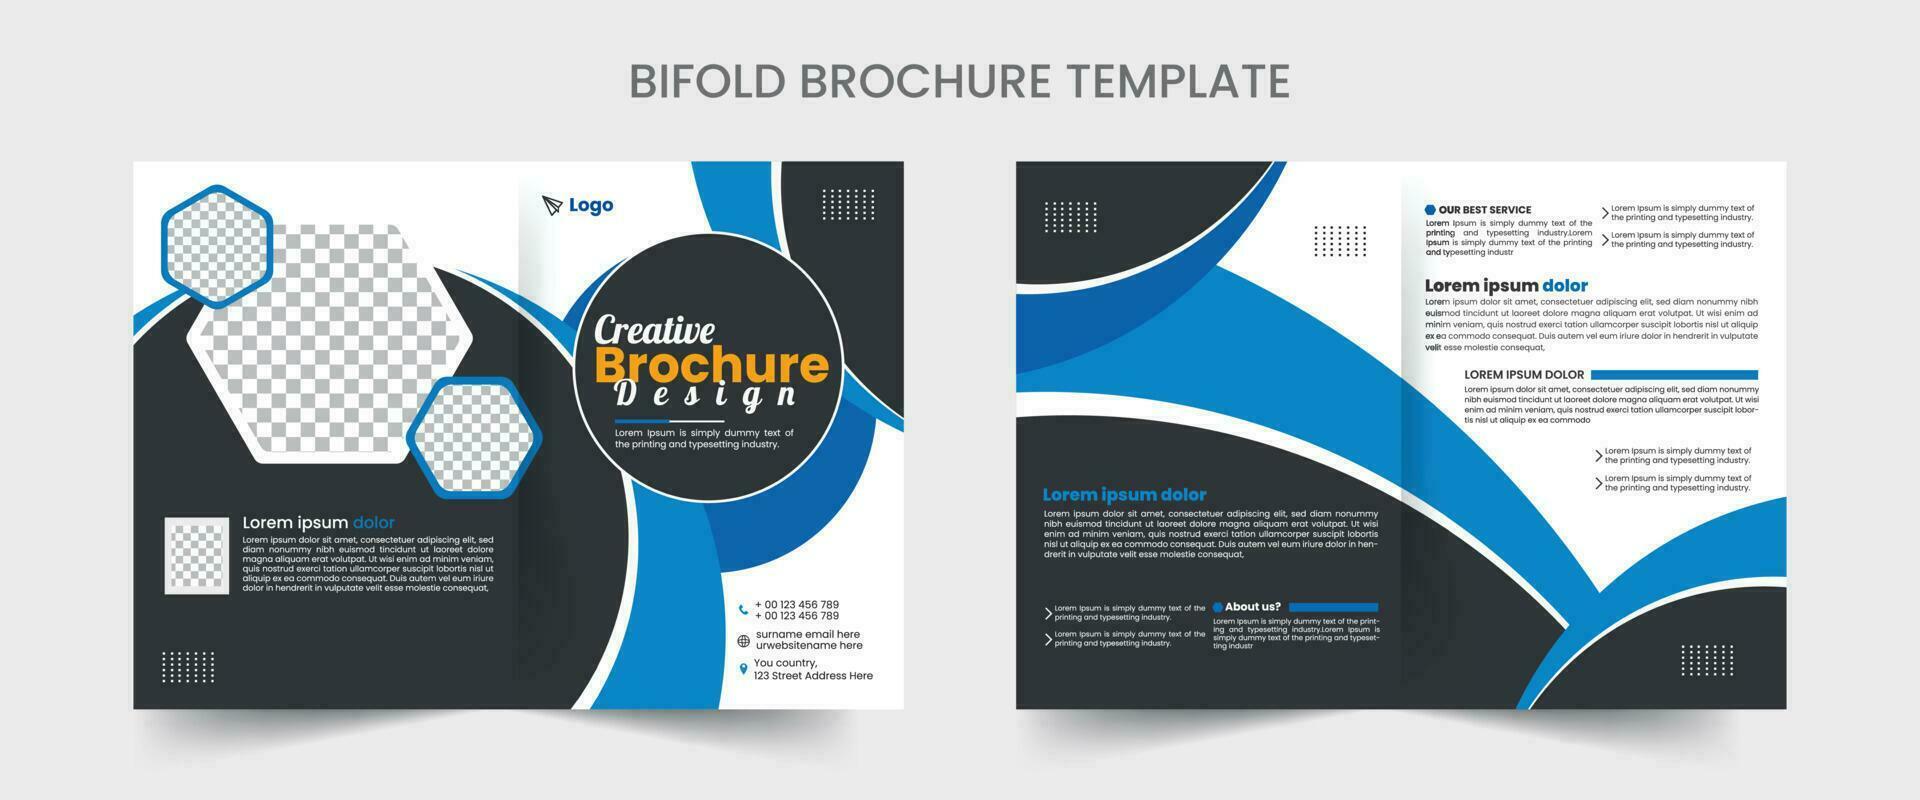 bi falten Broschüre Design Vorlage zum Ihre Unternehmen mit minimal und modern Formen im a4 Format. vektor